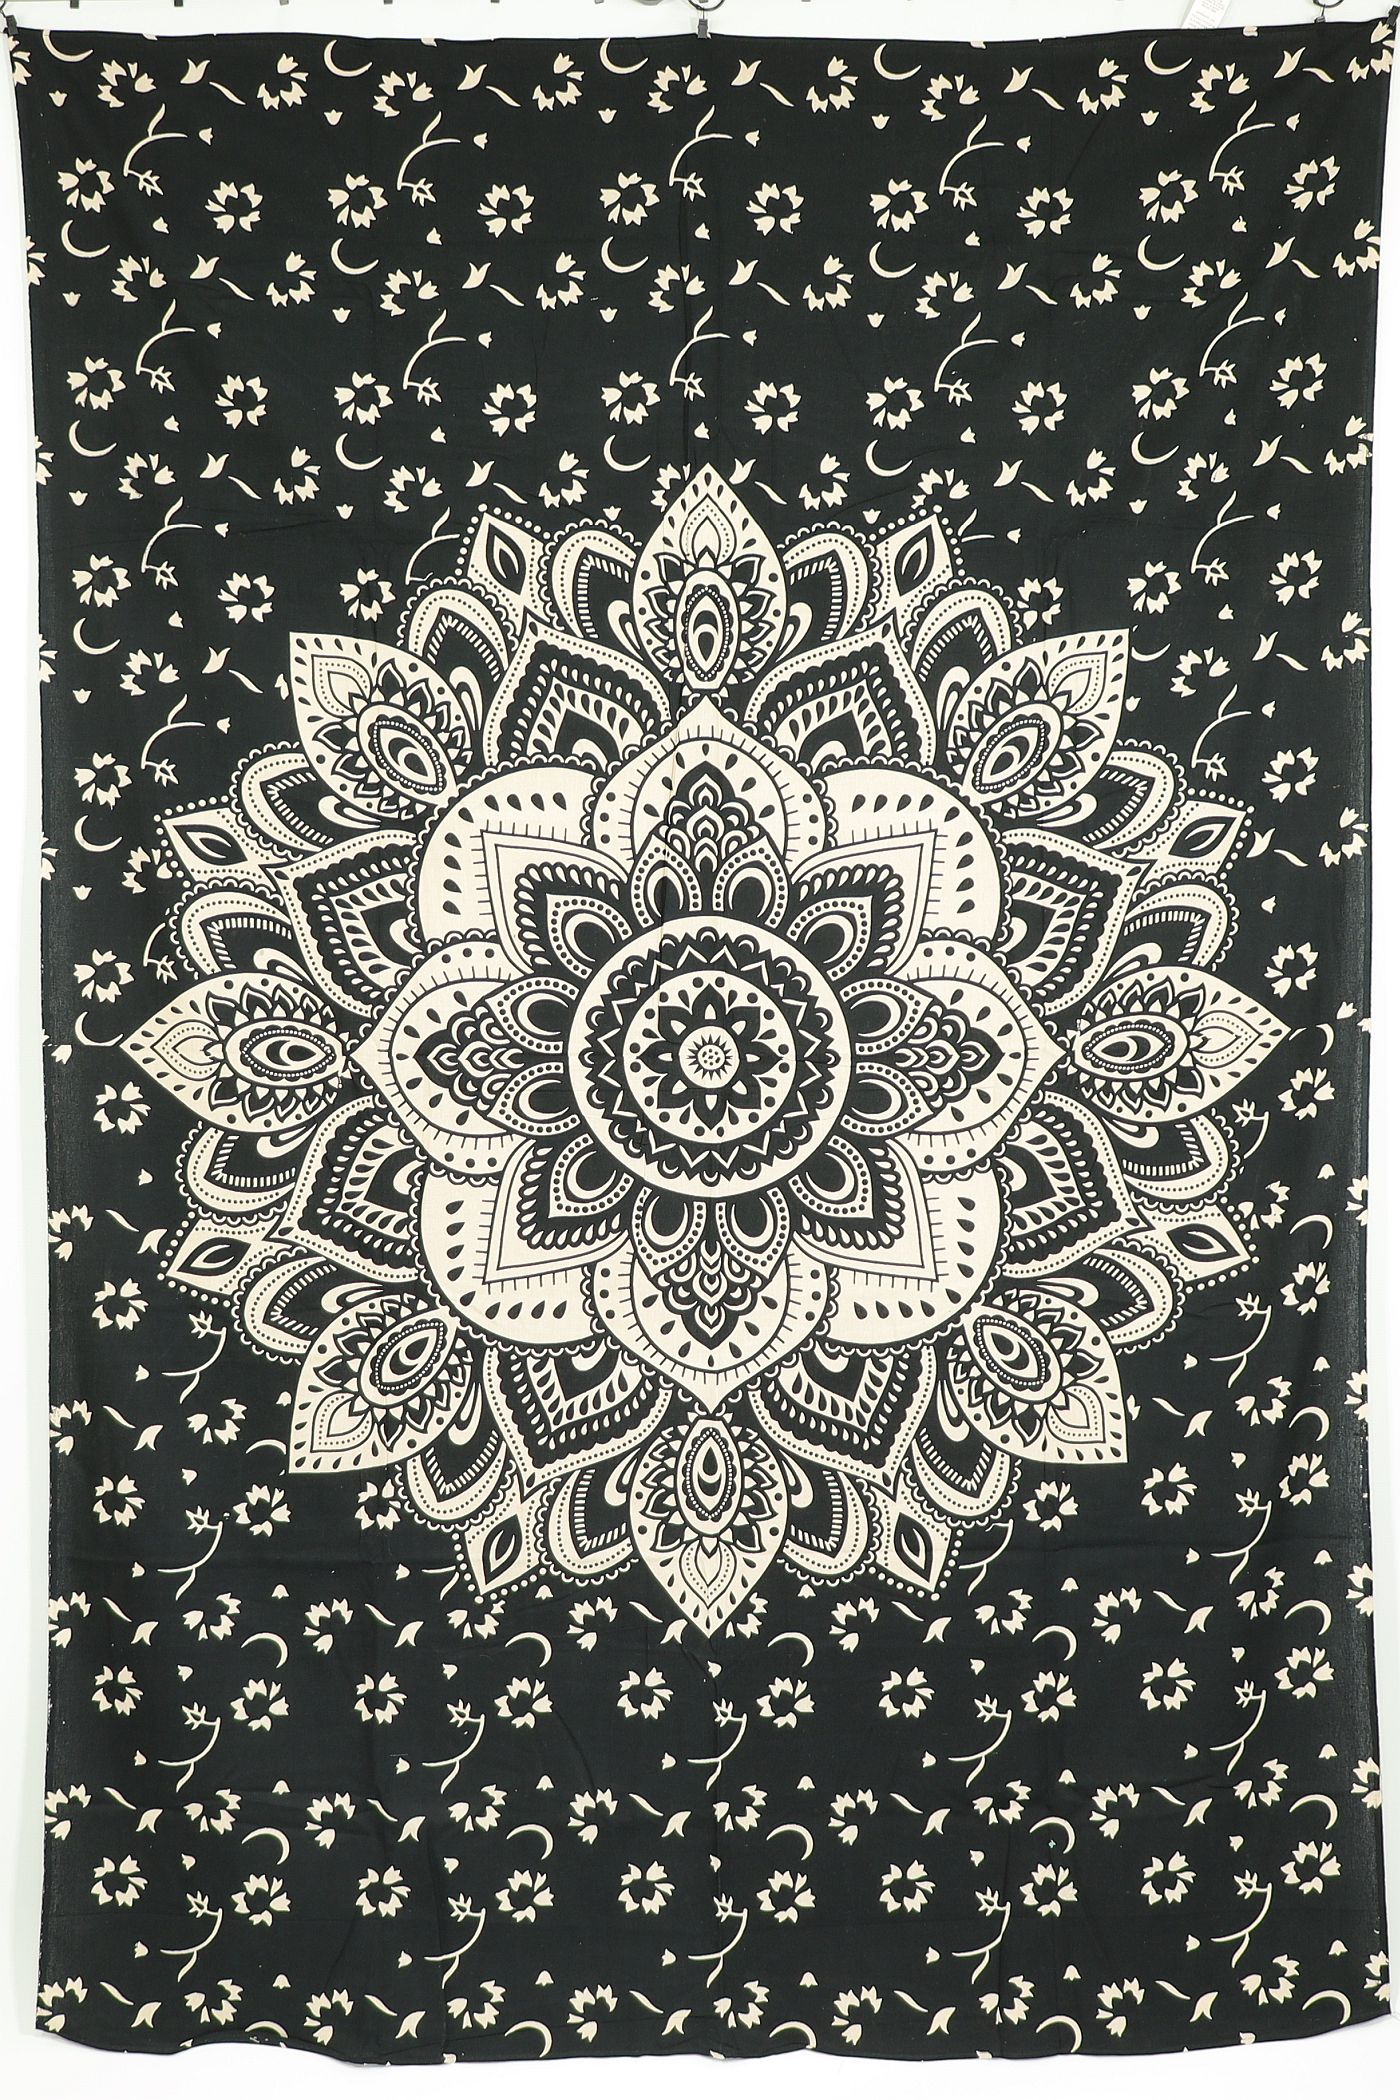 Wandtuch XL 130x210 - Mandala Lotus mit Blumen - 100% Baumwolle - detailreicher indischer Druck - zweifarbig - dekoratives Tuch, Wandbild, Tagesdecke, Bedcover, Vorhang, Picknick-Decke, Strandtuch